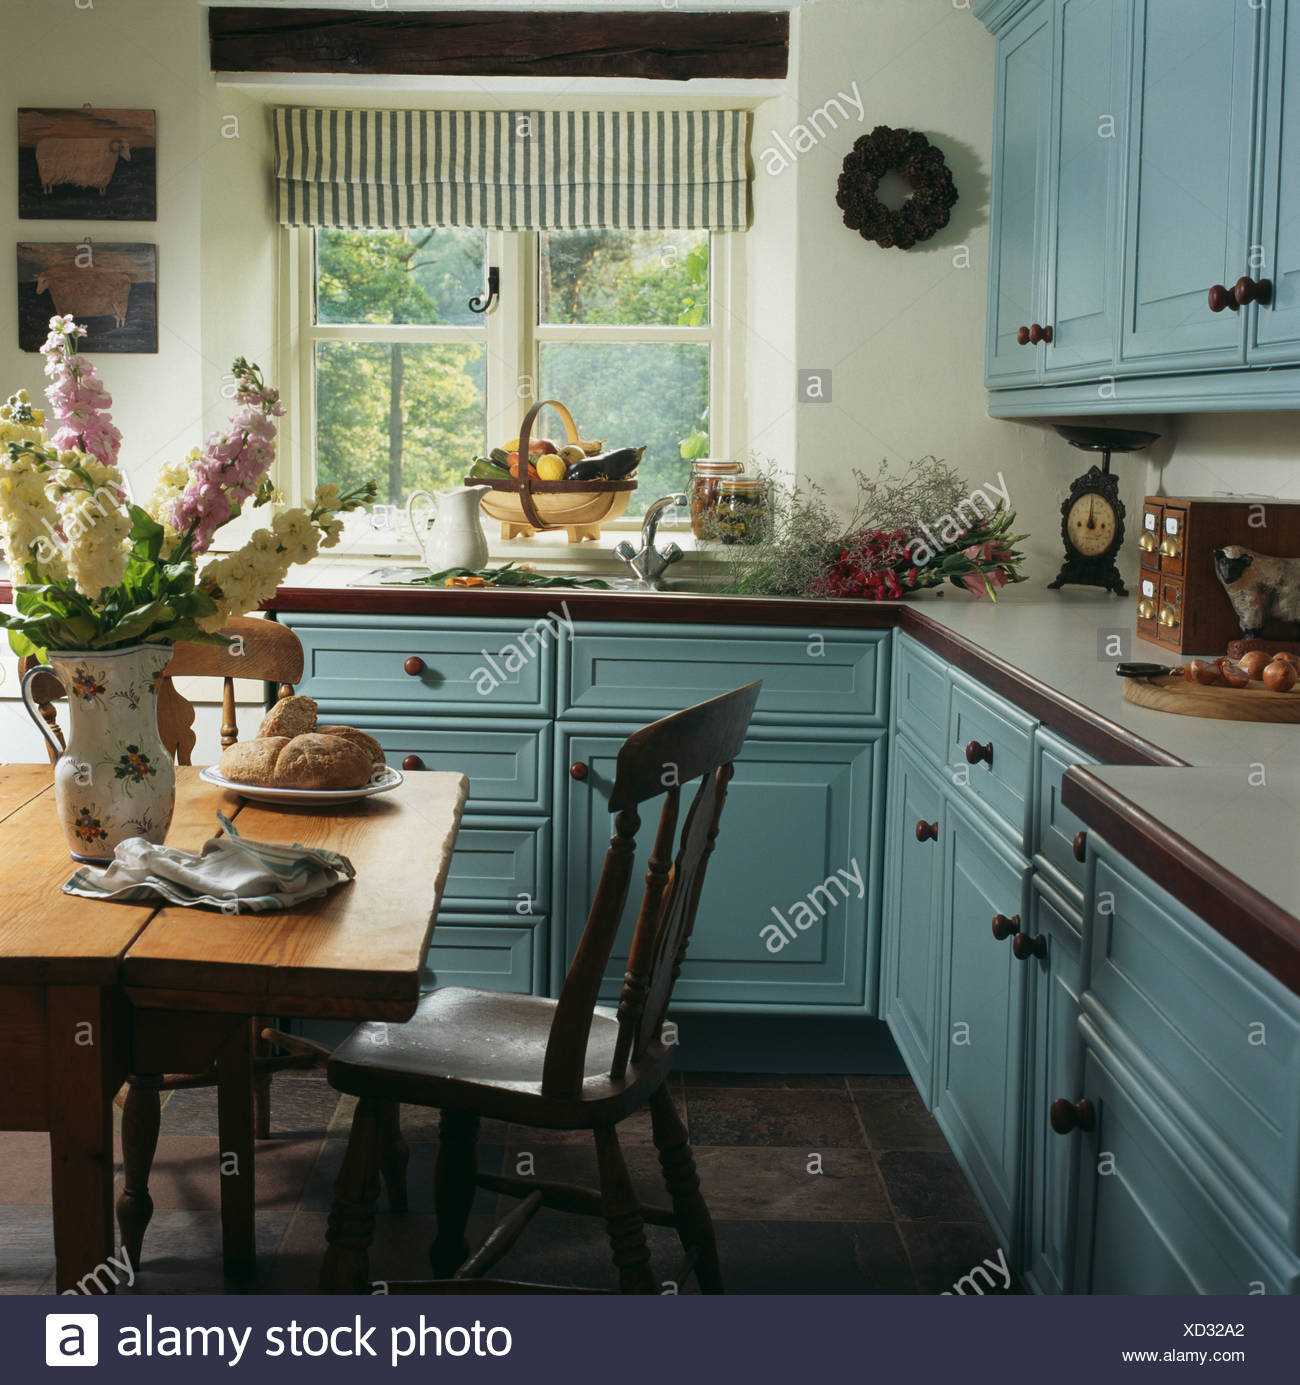 pastel wooden kitchen